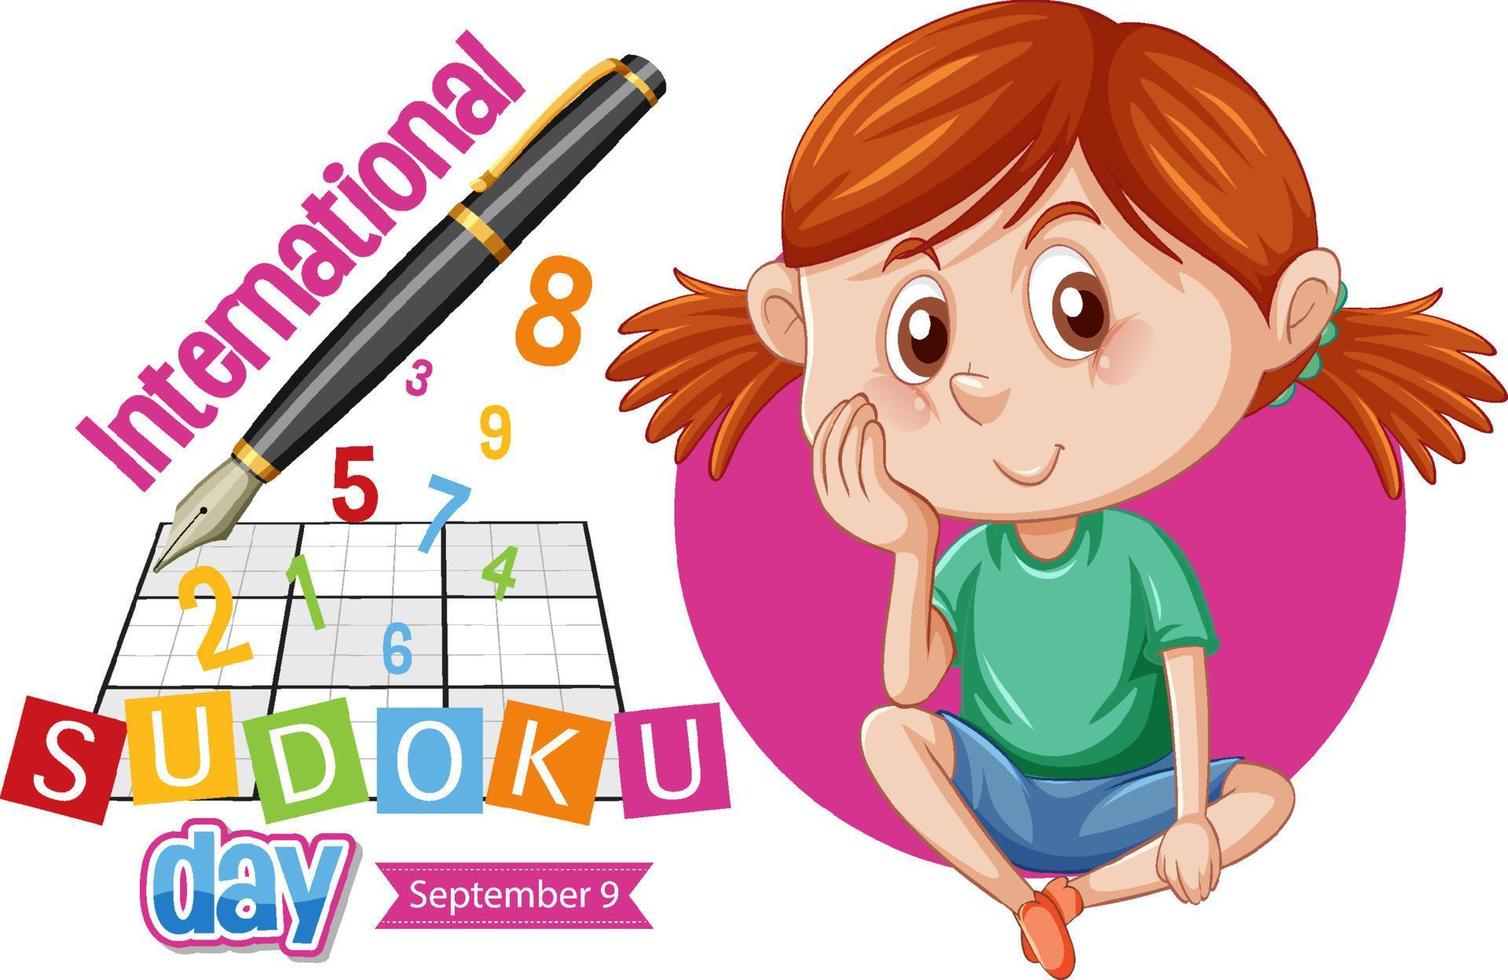 Internationaler Sudoku-Tag 9. September vektor